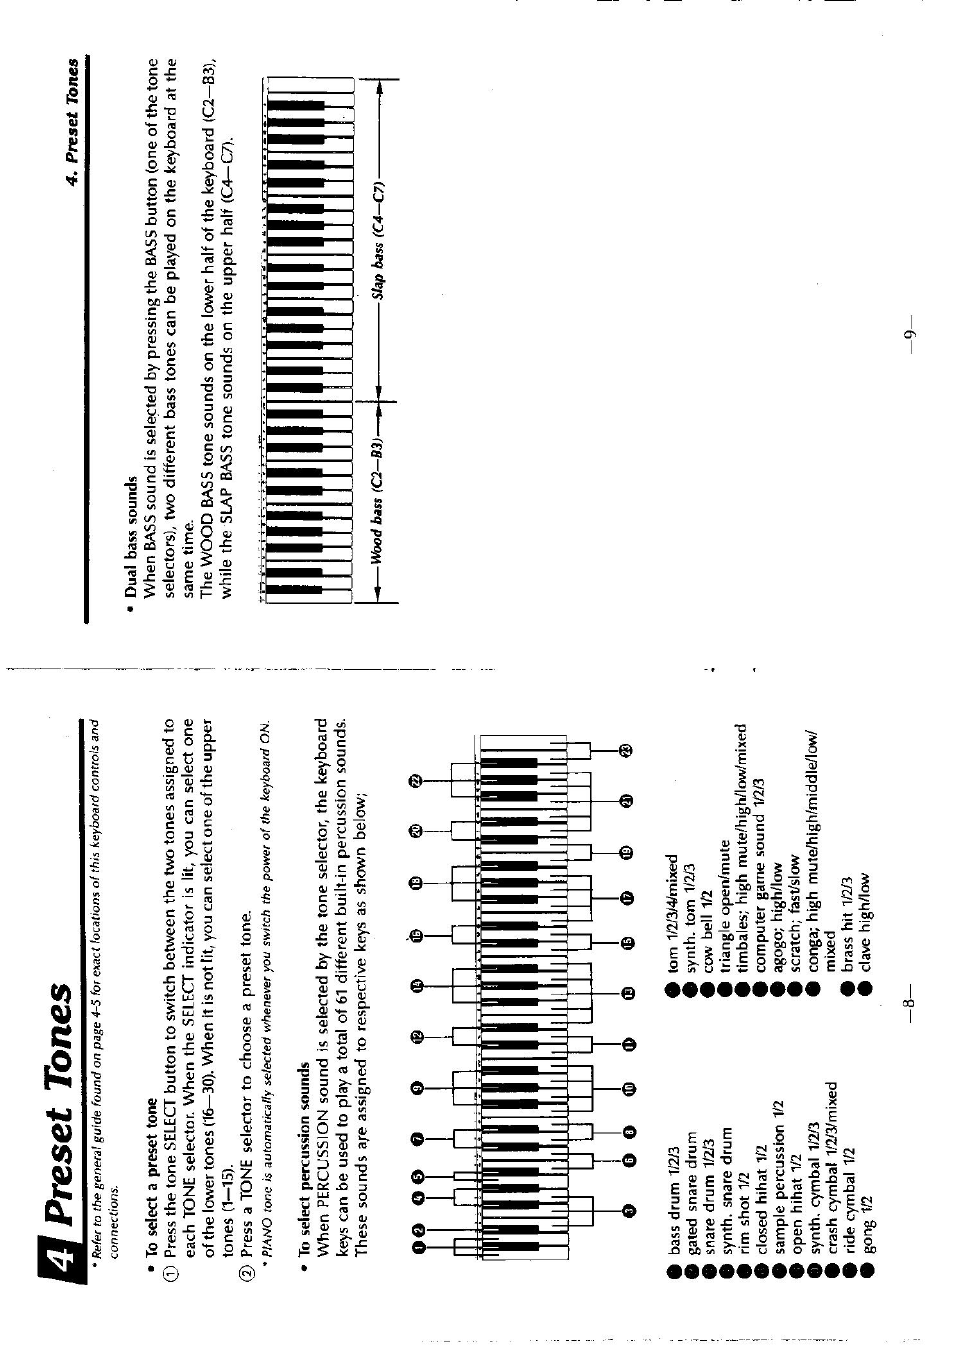 Preset tones | Casio CT-636 User Manual | Page 5 / 10 | Original mode